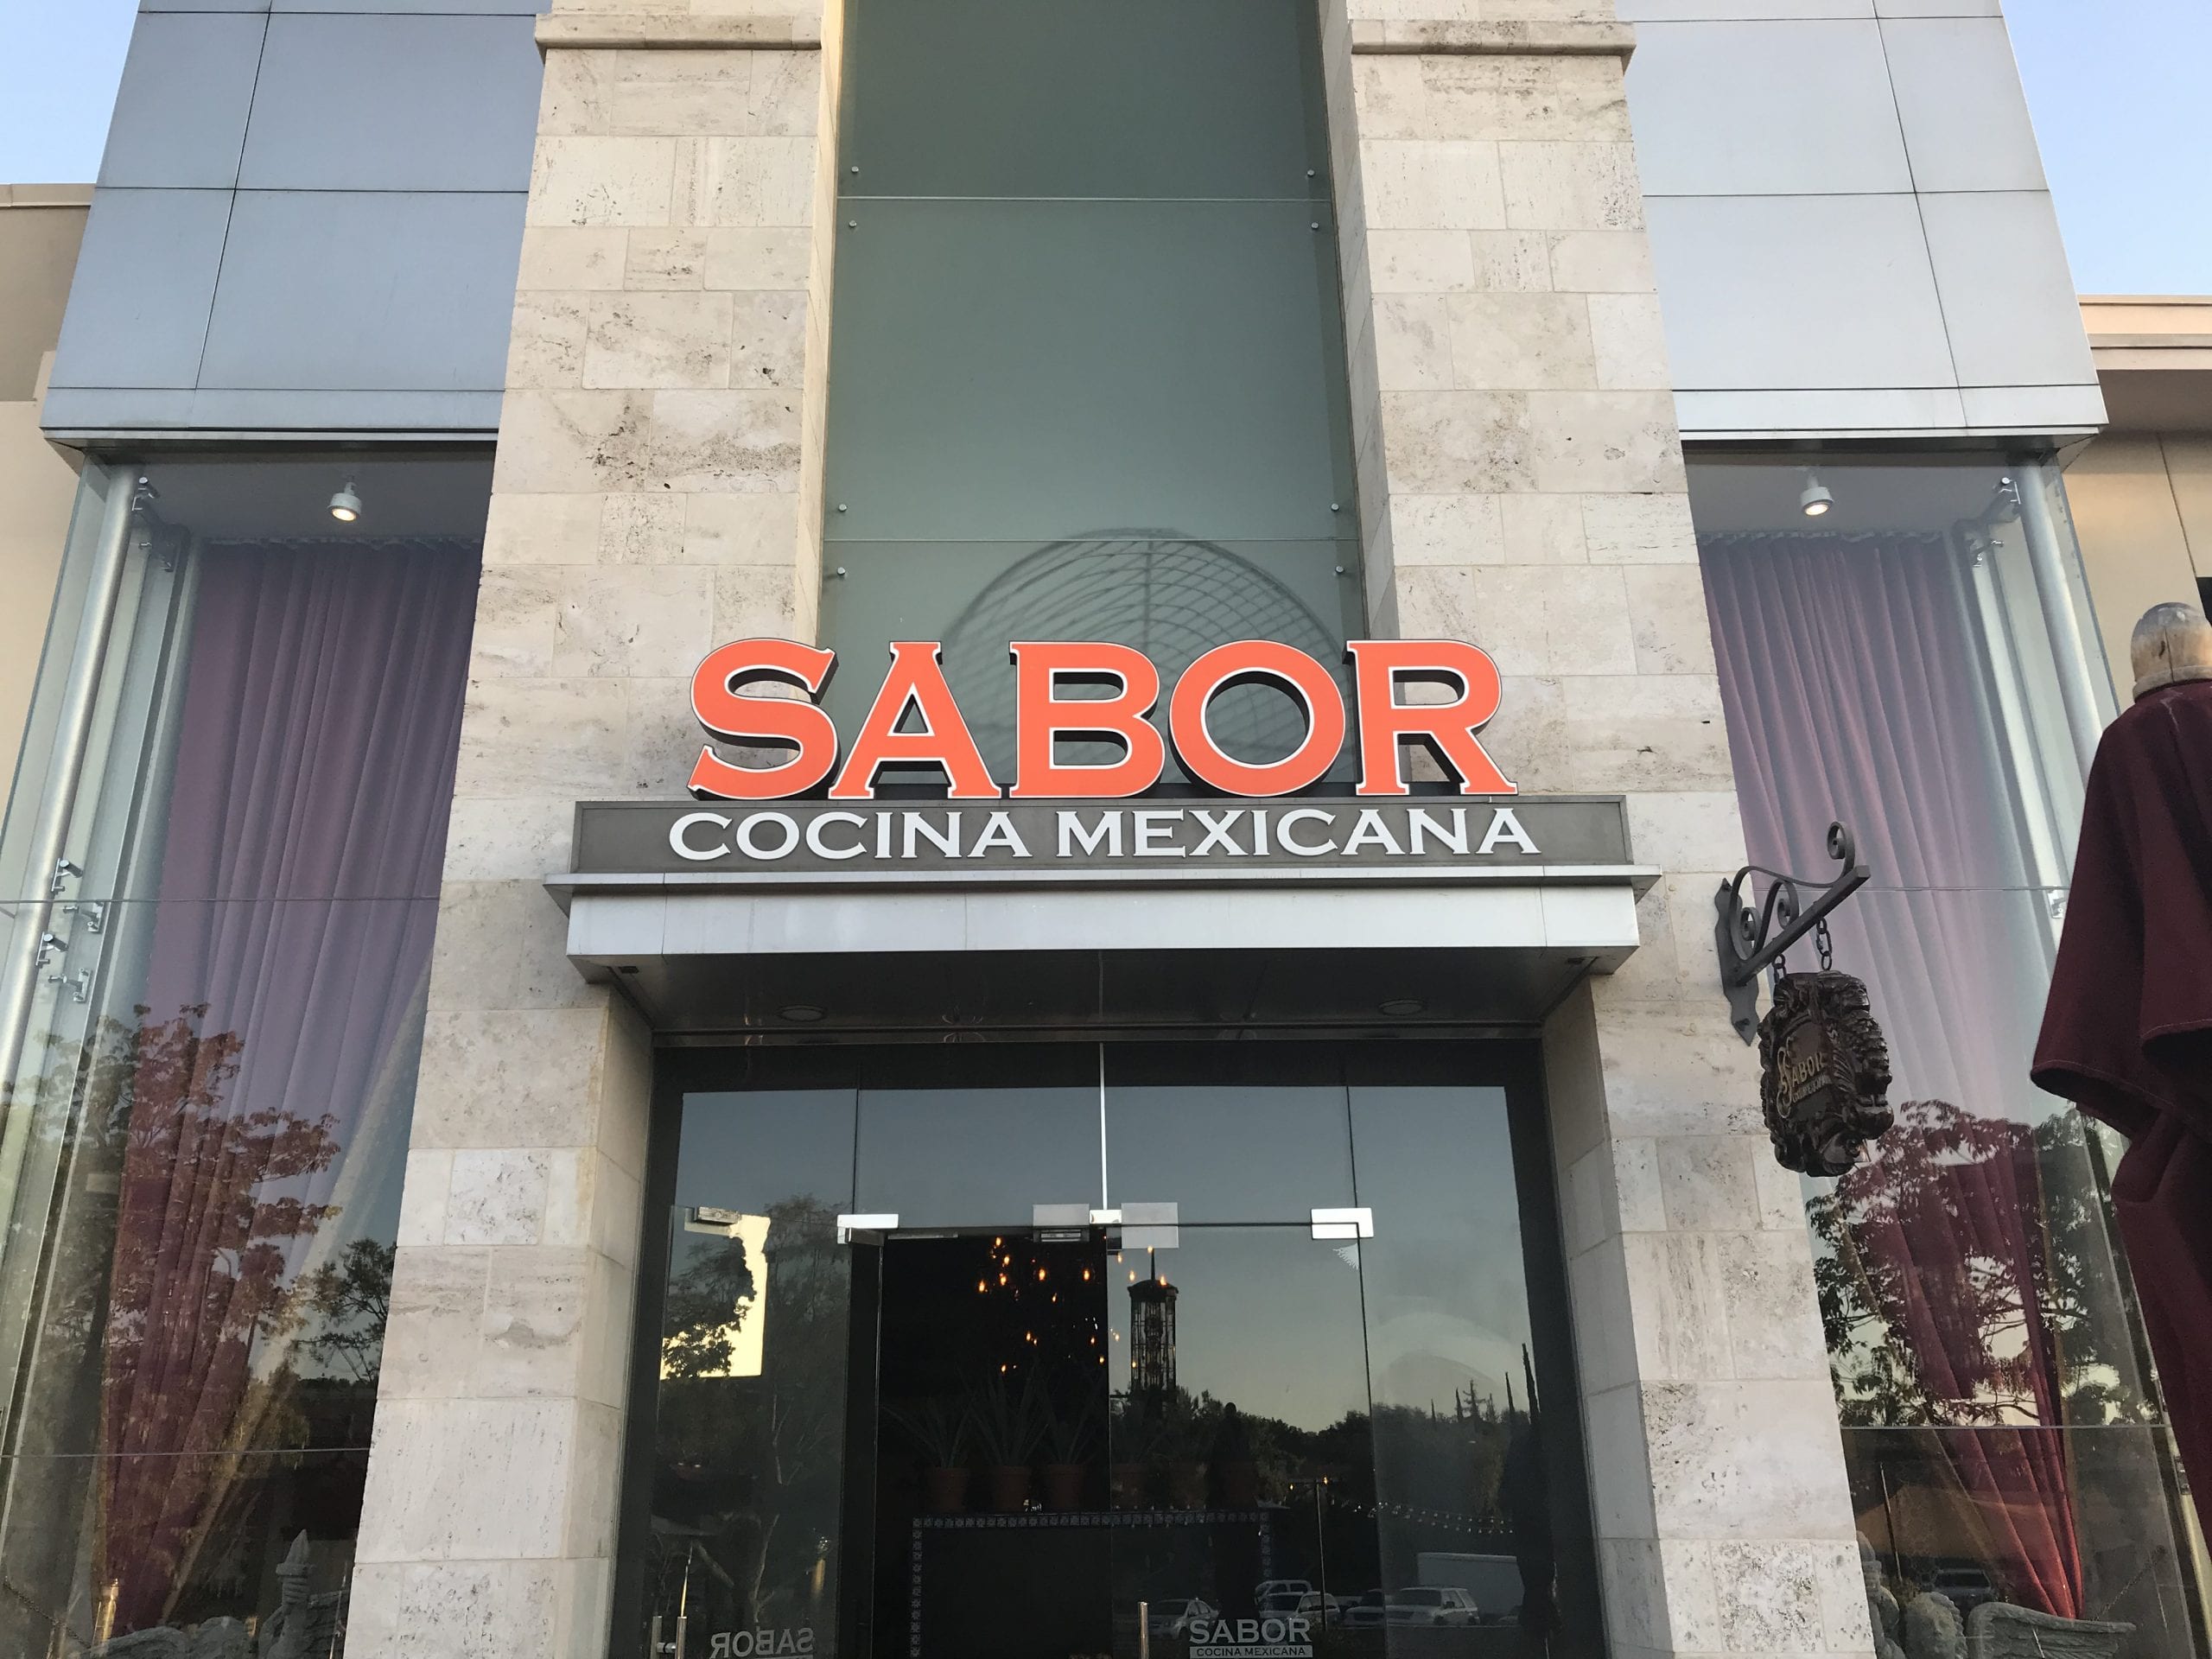 Sabor Cocino Mexicana